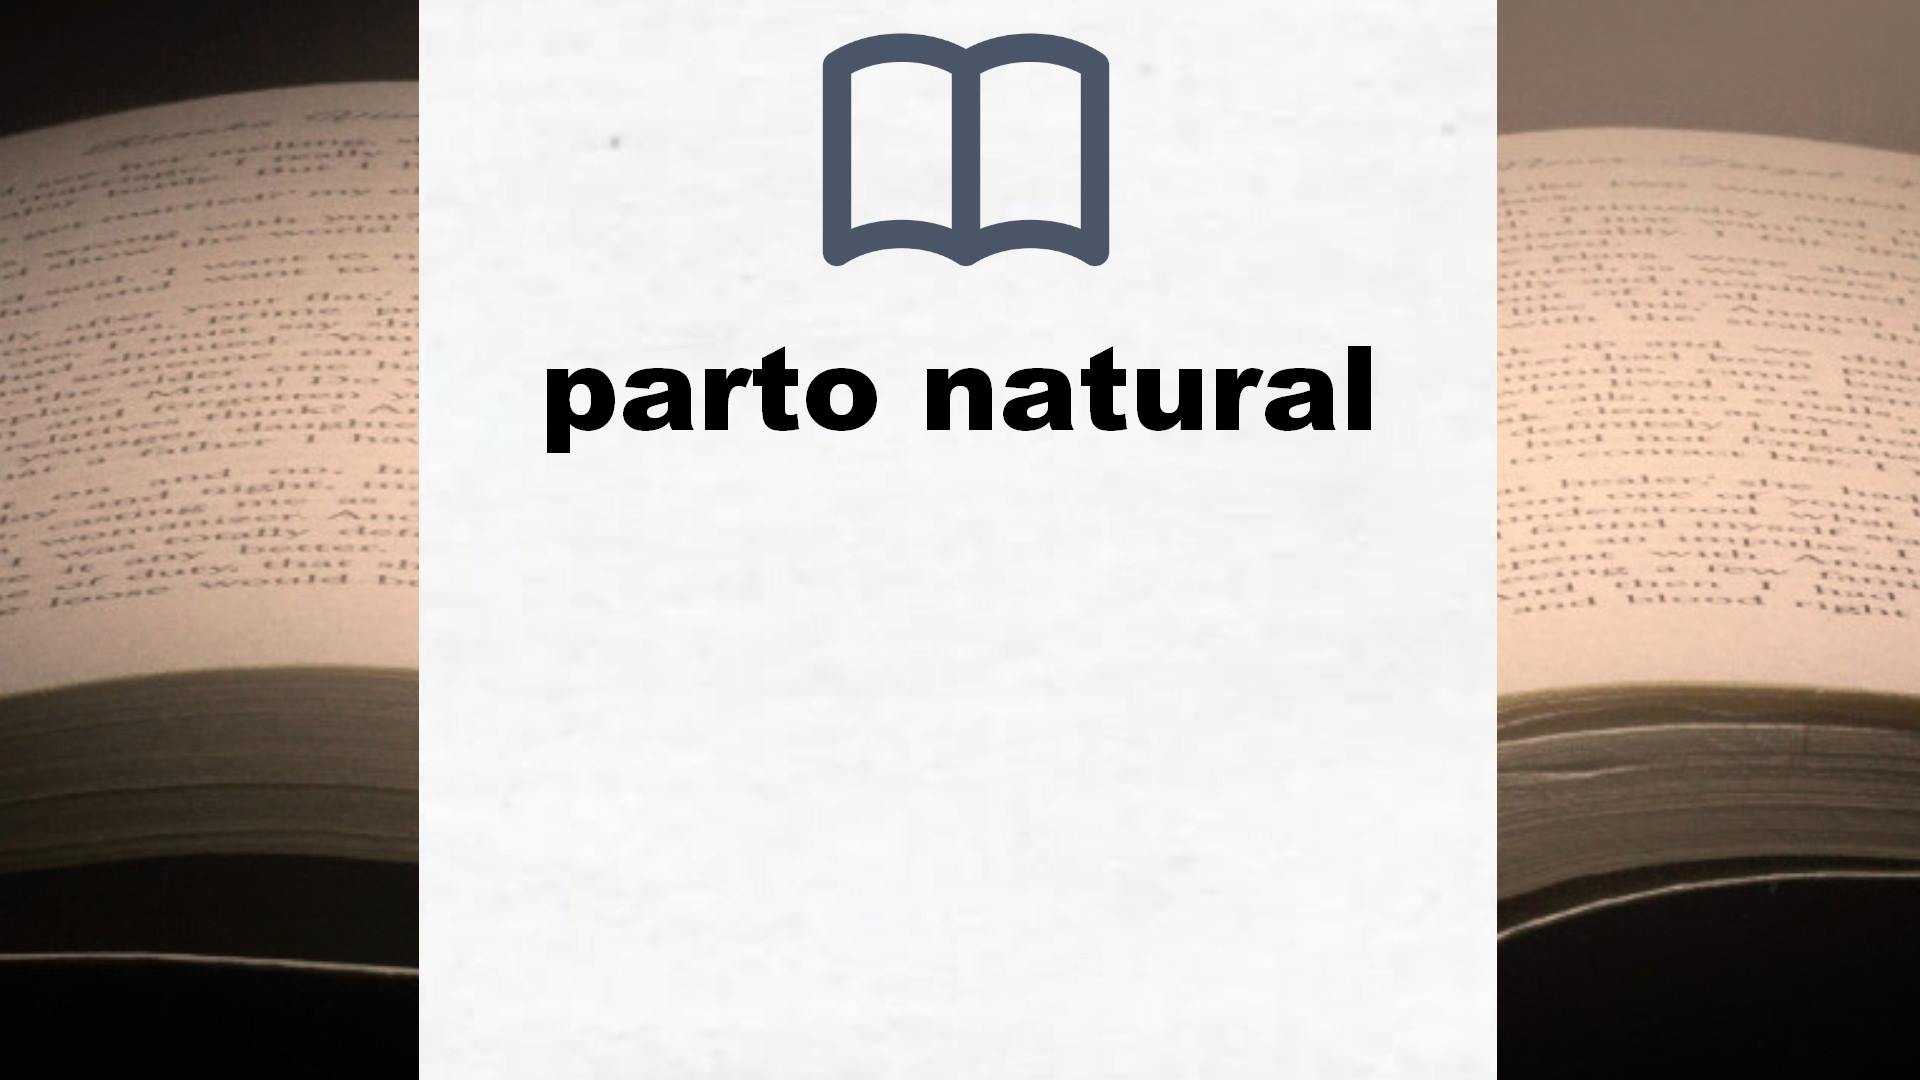 Libros sobre parto natural